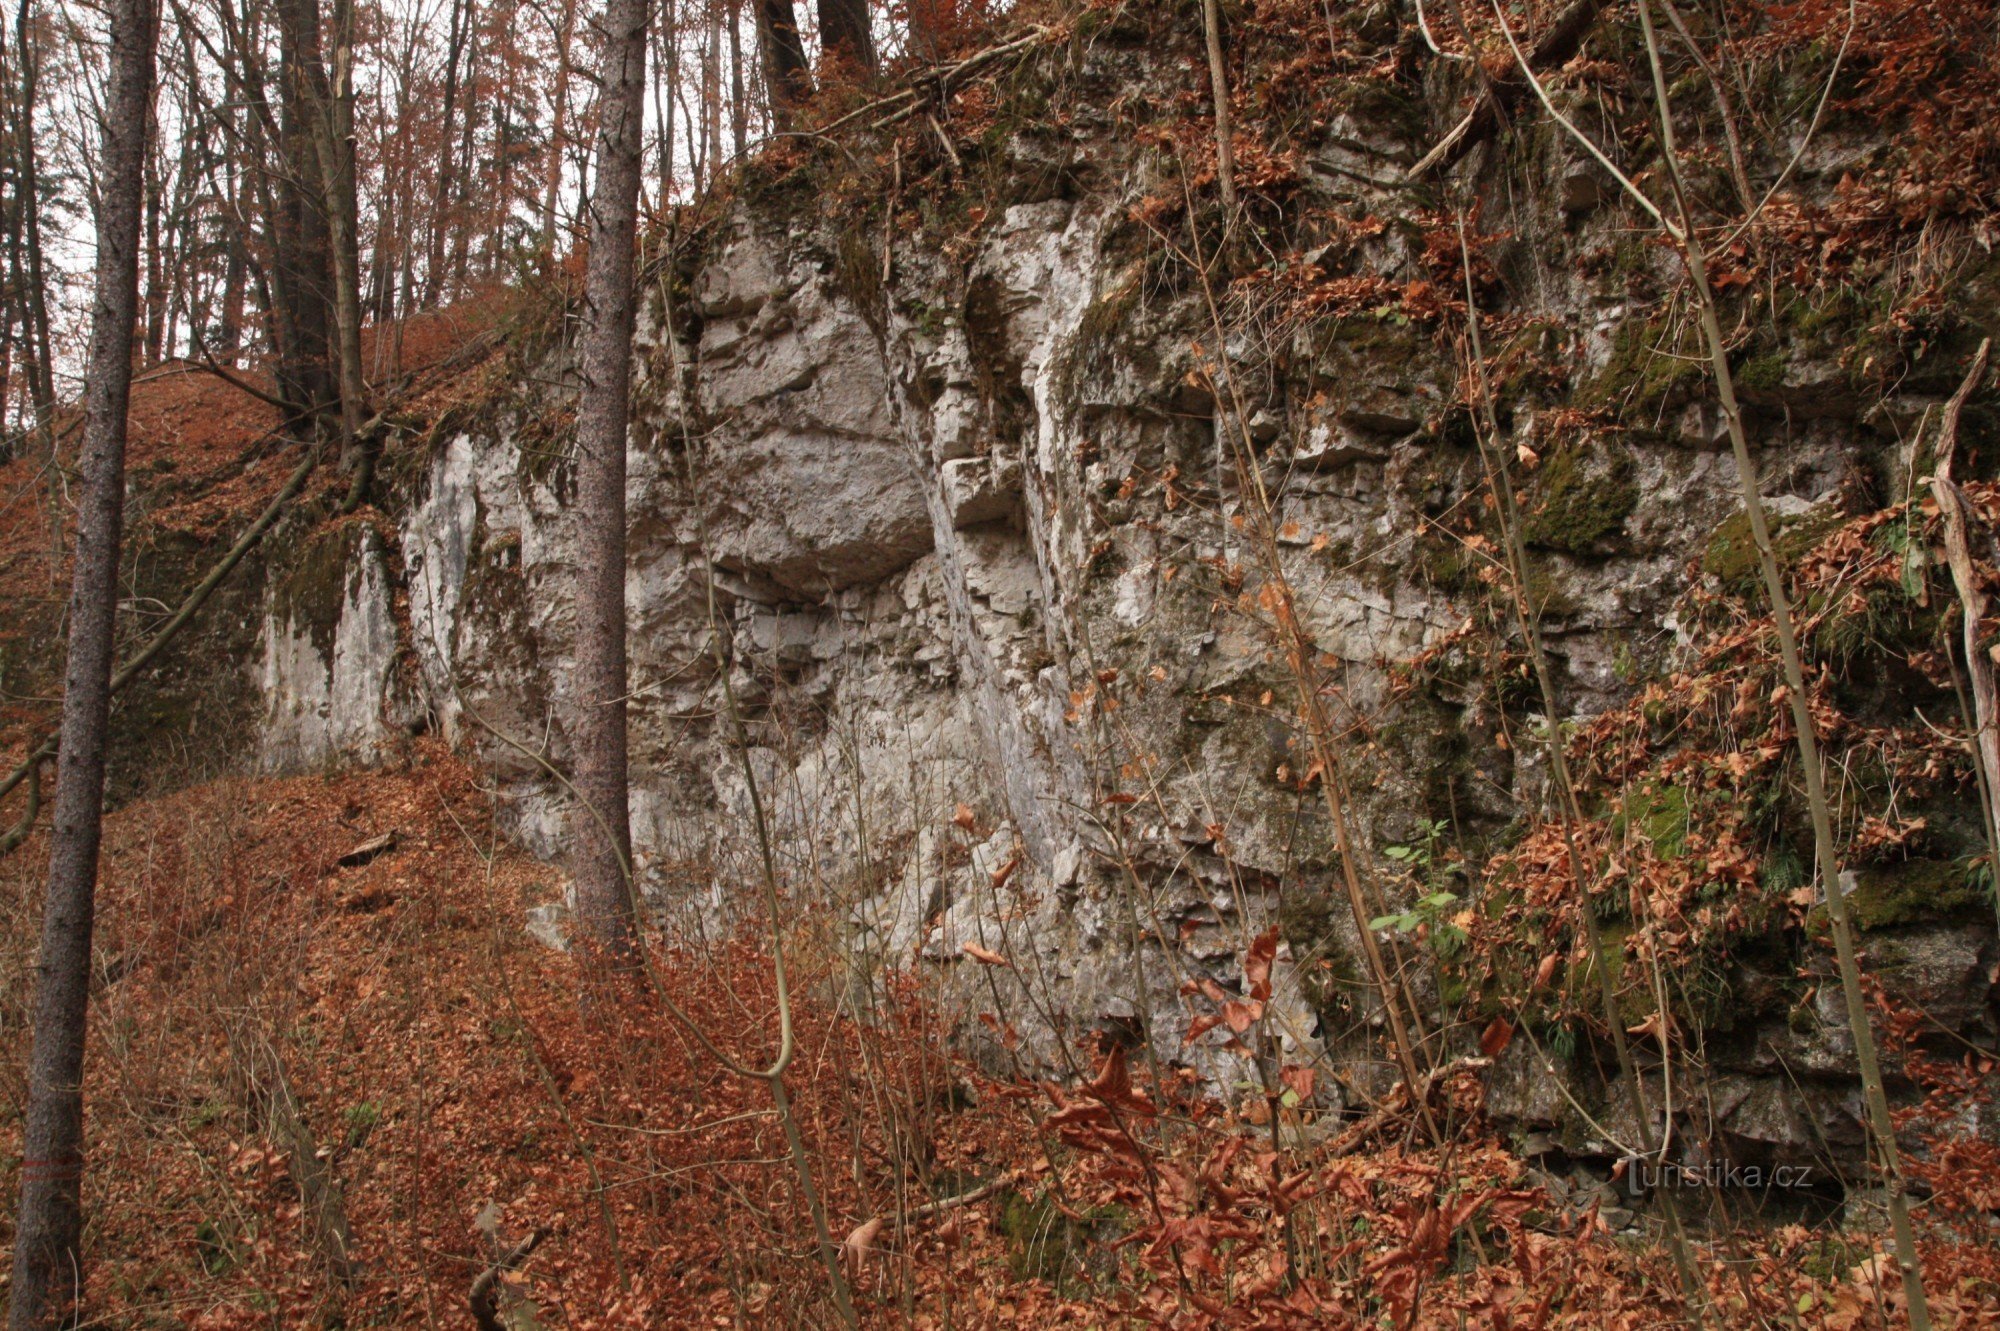 Sziklák Vaječníkban, felső részen a vajecníki barlang bejárata